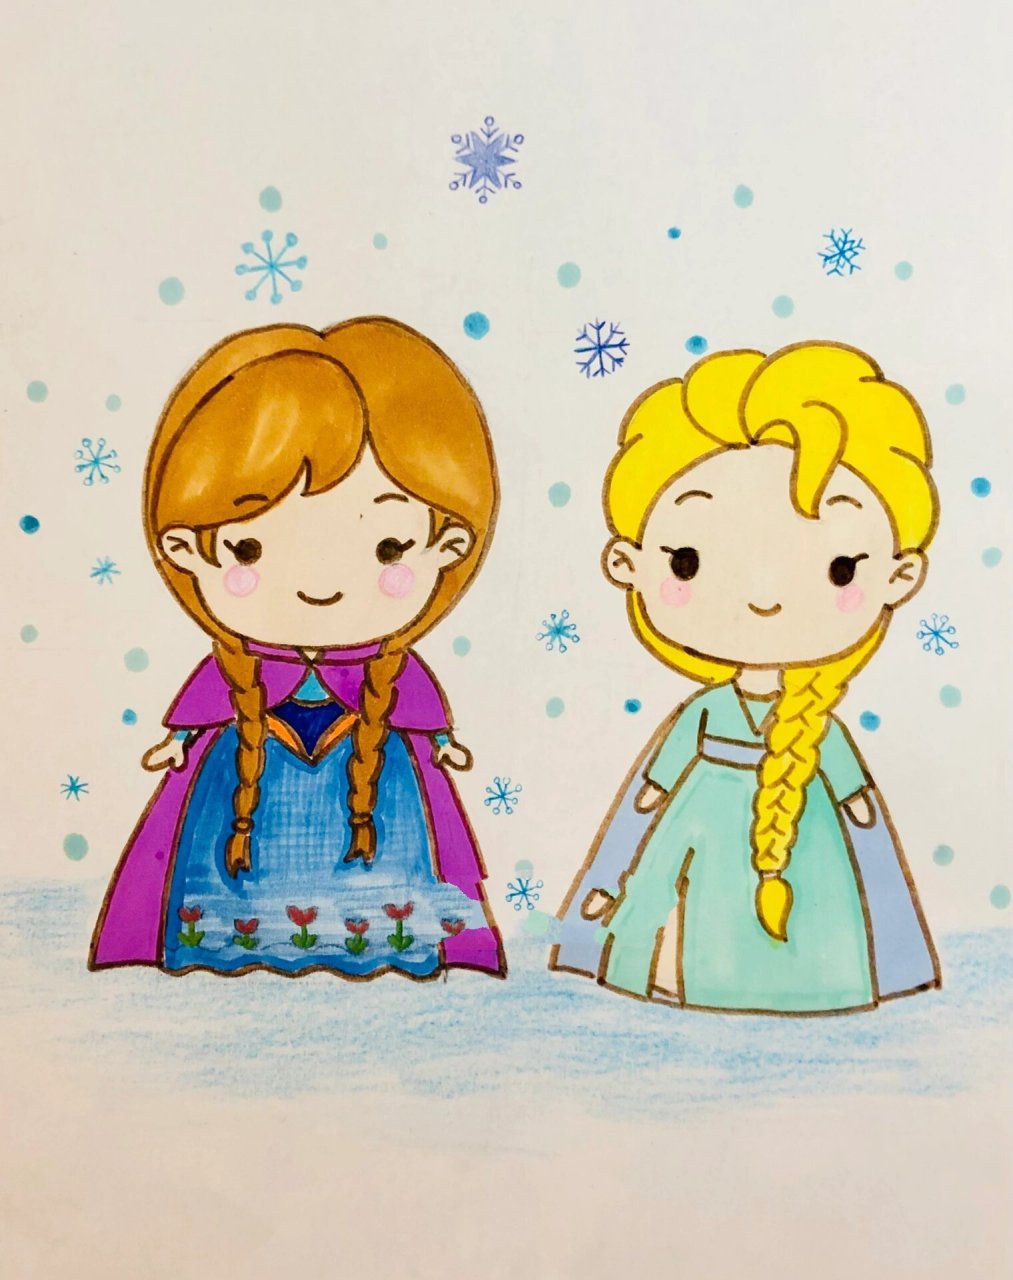 简笔画安娜与艾莎 六岁女孩的公主梦 简单版的艾莎和安娜公主